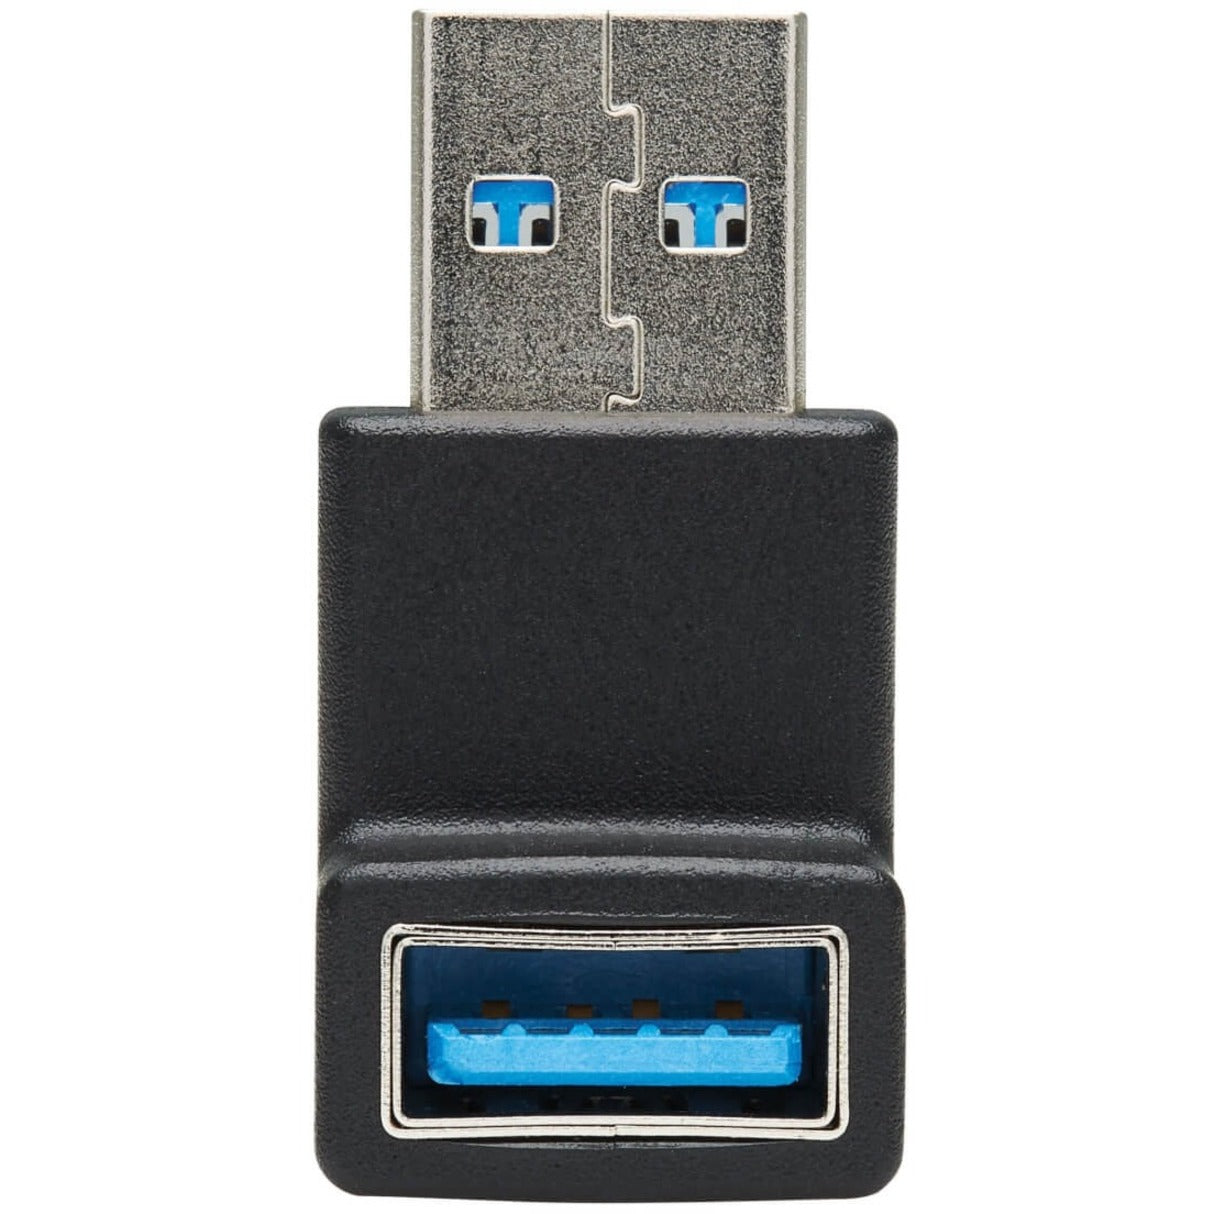 Tripp Lite U324-000-DN USB 3.0 SuperSpeed Adapter - USB-A to USB-A M/F Down Angle Black